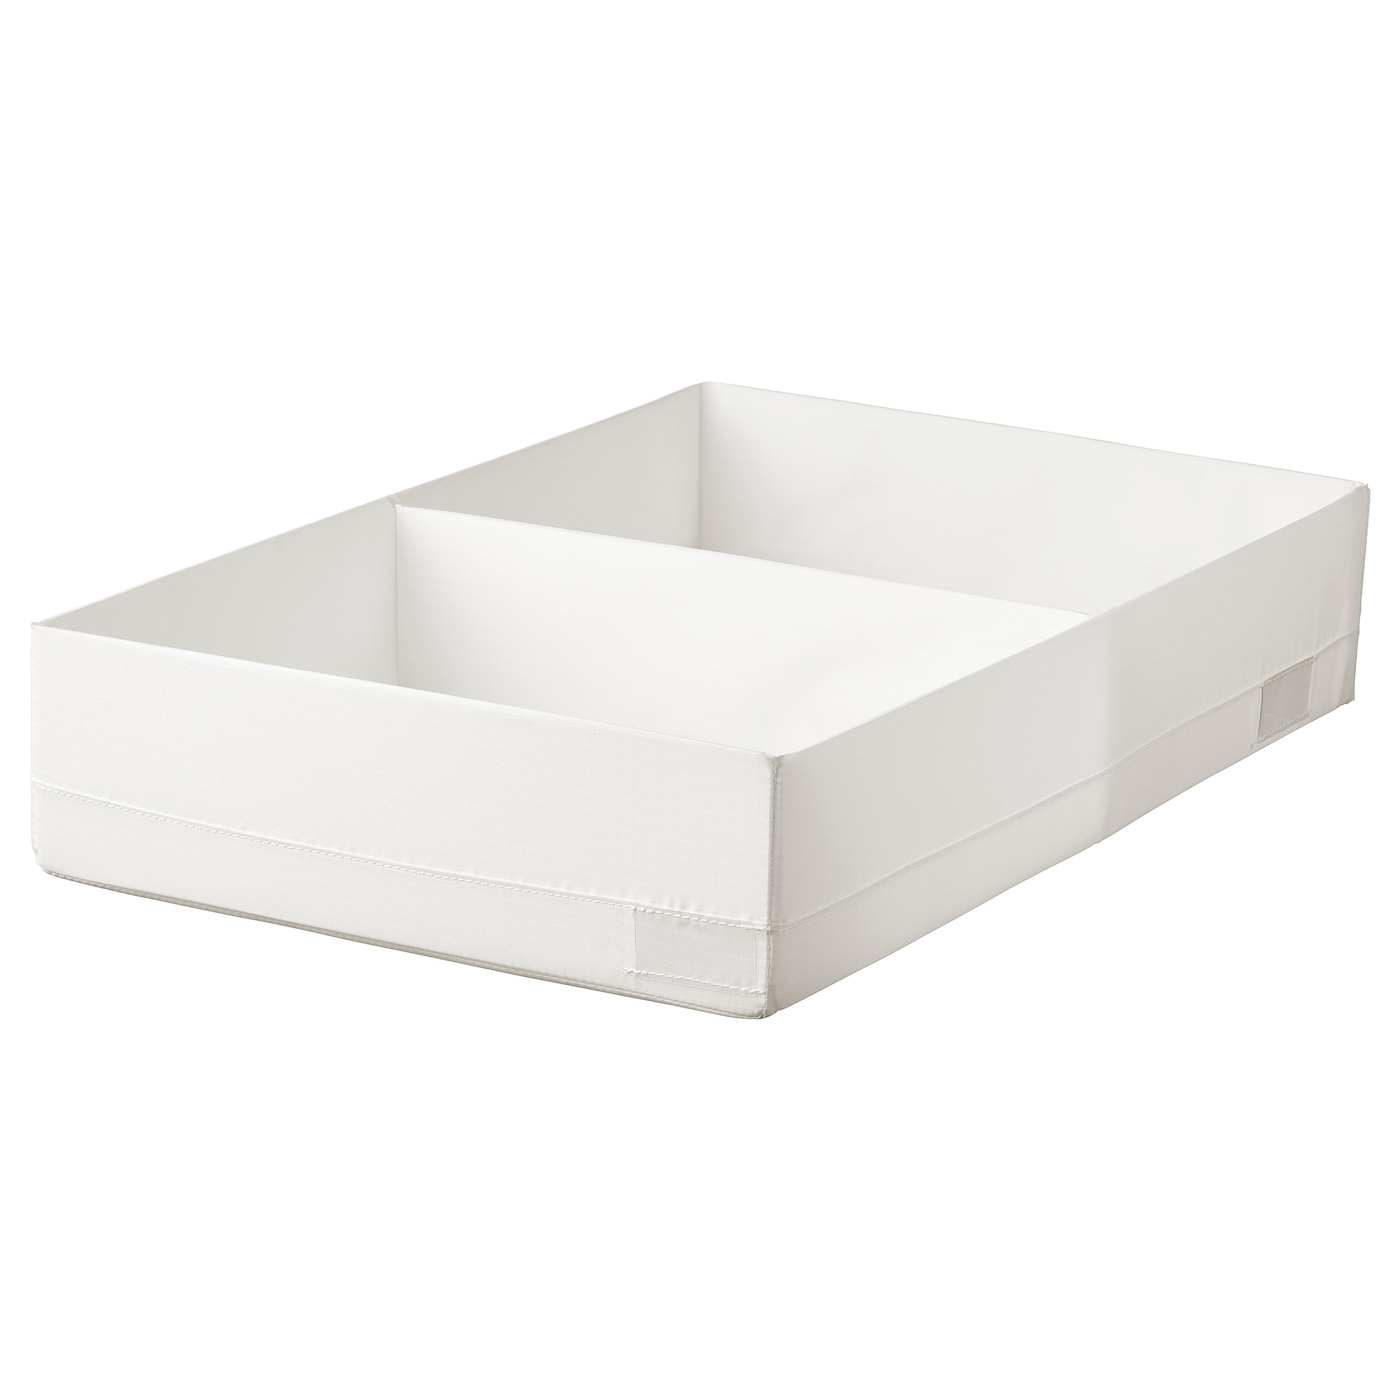 STUK СТУК Ящик с отделениями, белый, 34x51x10 см IKEA stuk стук органайзер белый 26x20x6 см ikea